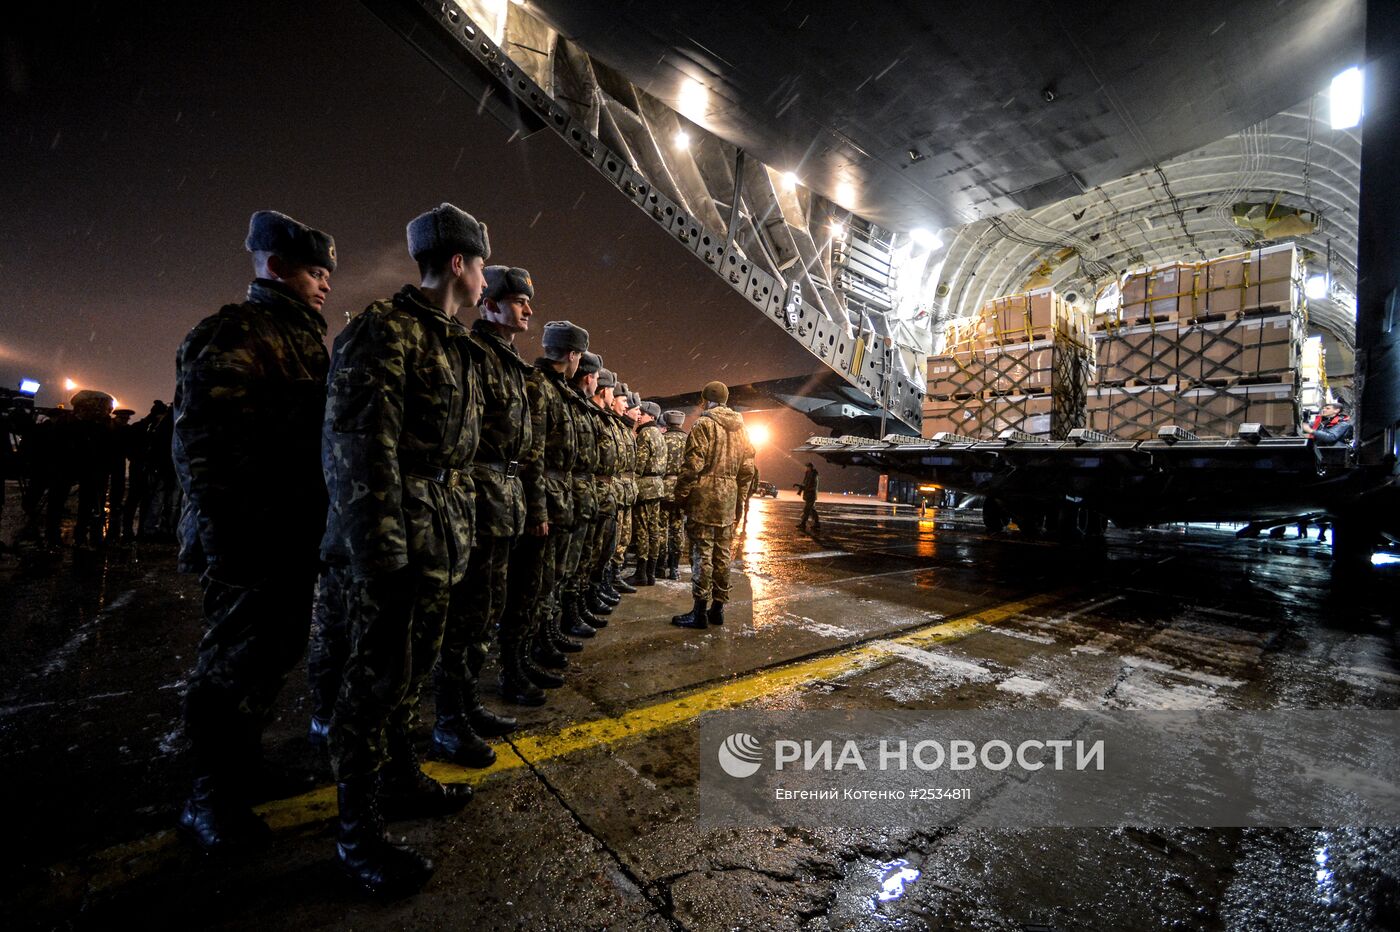 Зимняя форма одежды для военнослужащих ВС Украины доставлена в аэропорт "Борисполь" из Канады